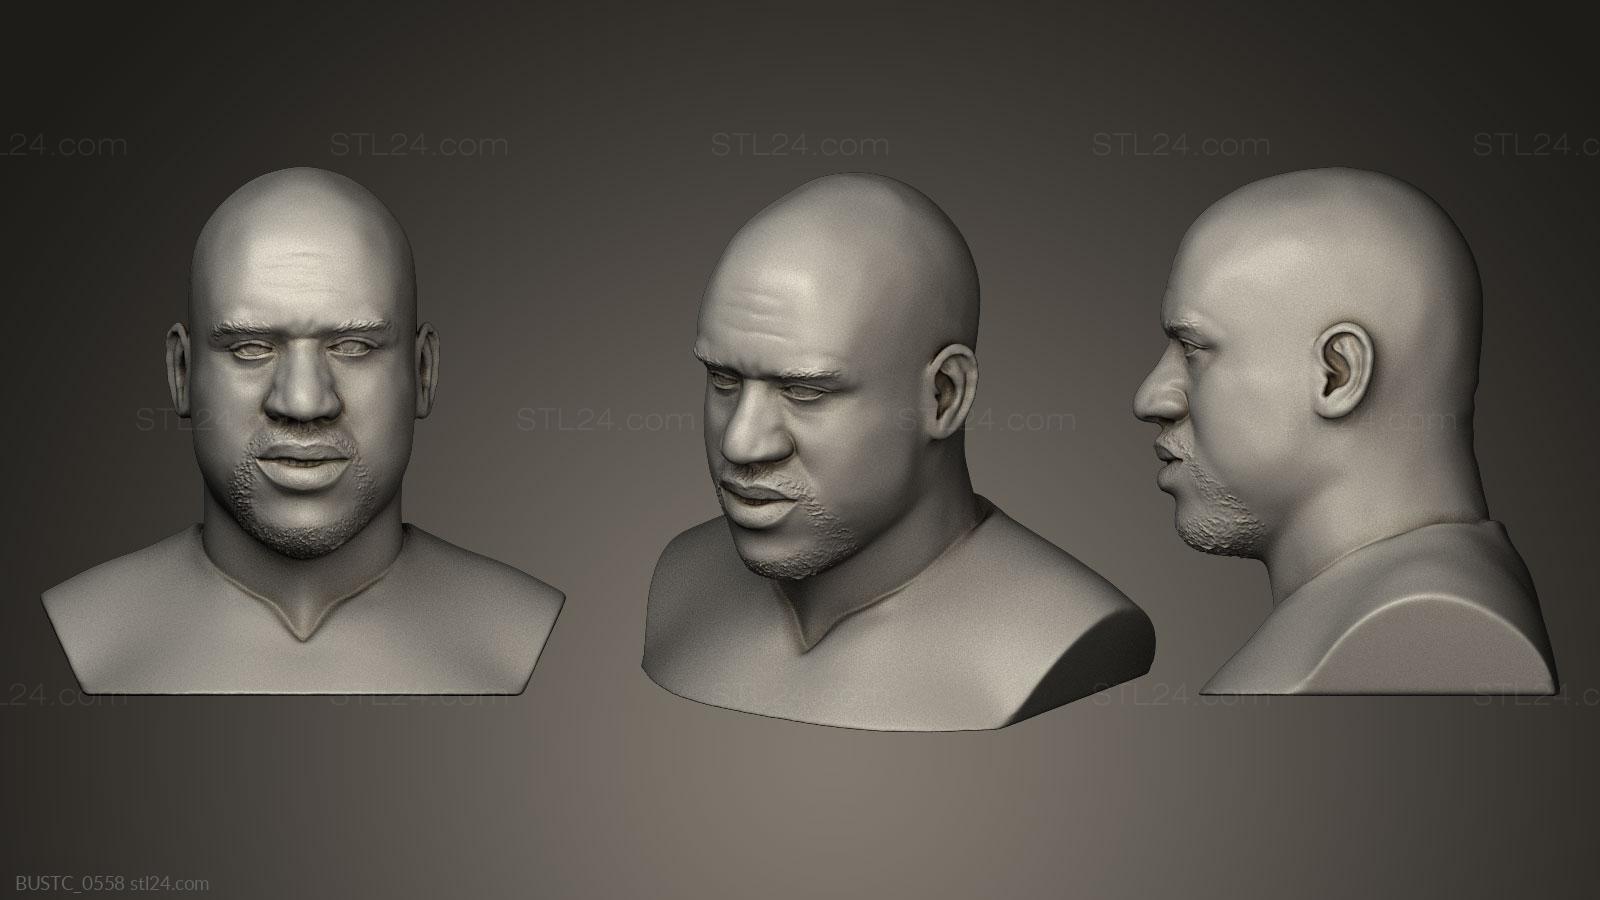 Бюсты и барельефы известных личностей (Шакилл О Нил, BUSTC_0558) 3D модель для ЧПУ станка